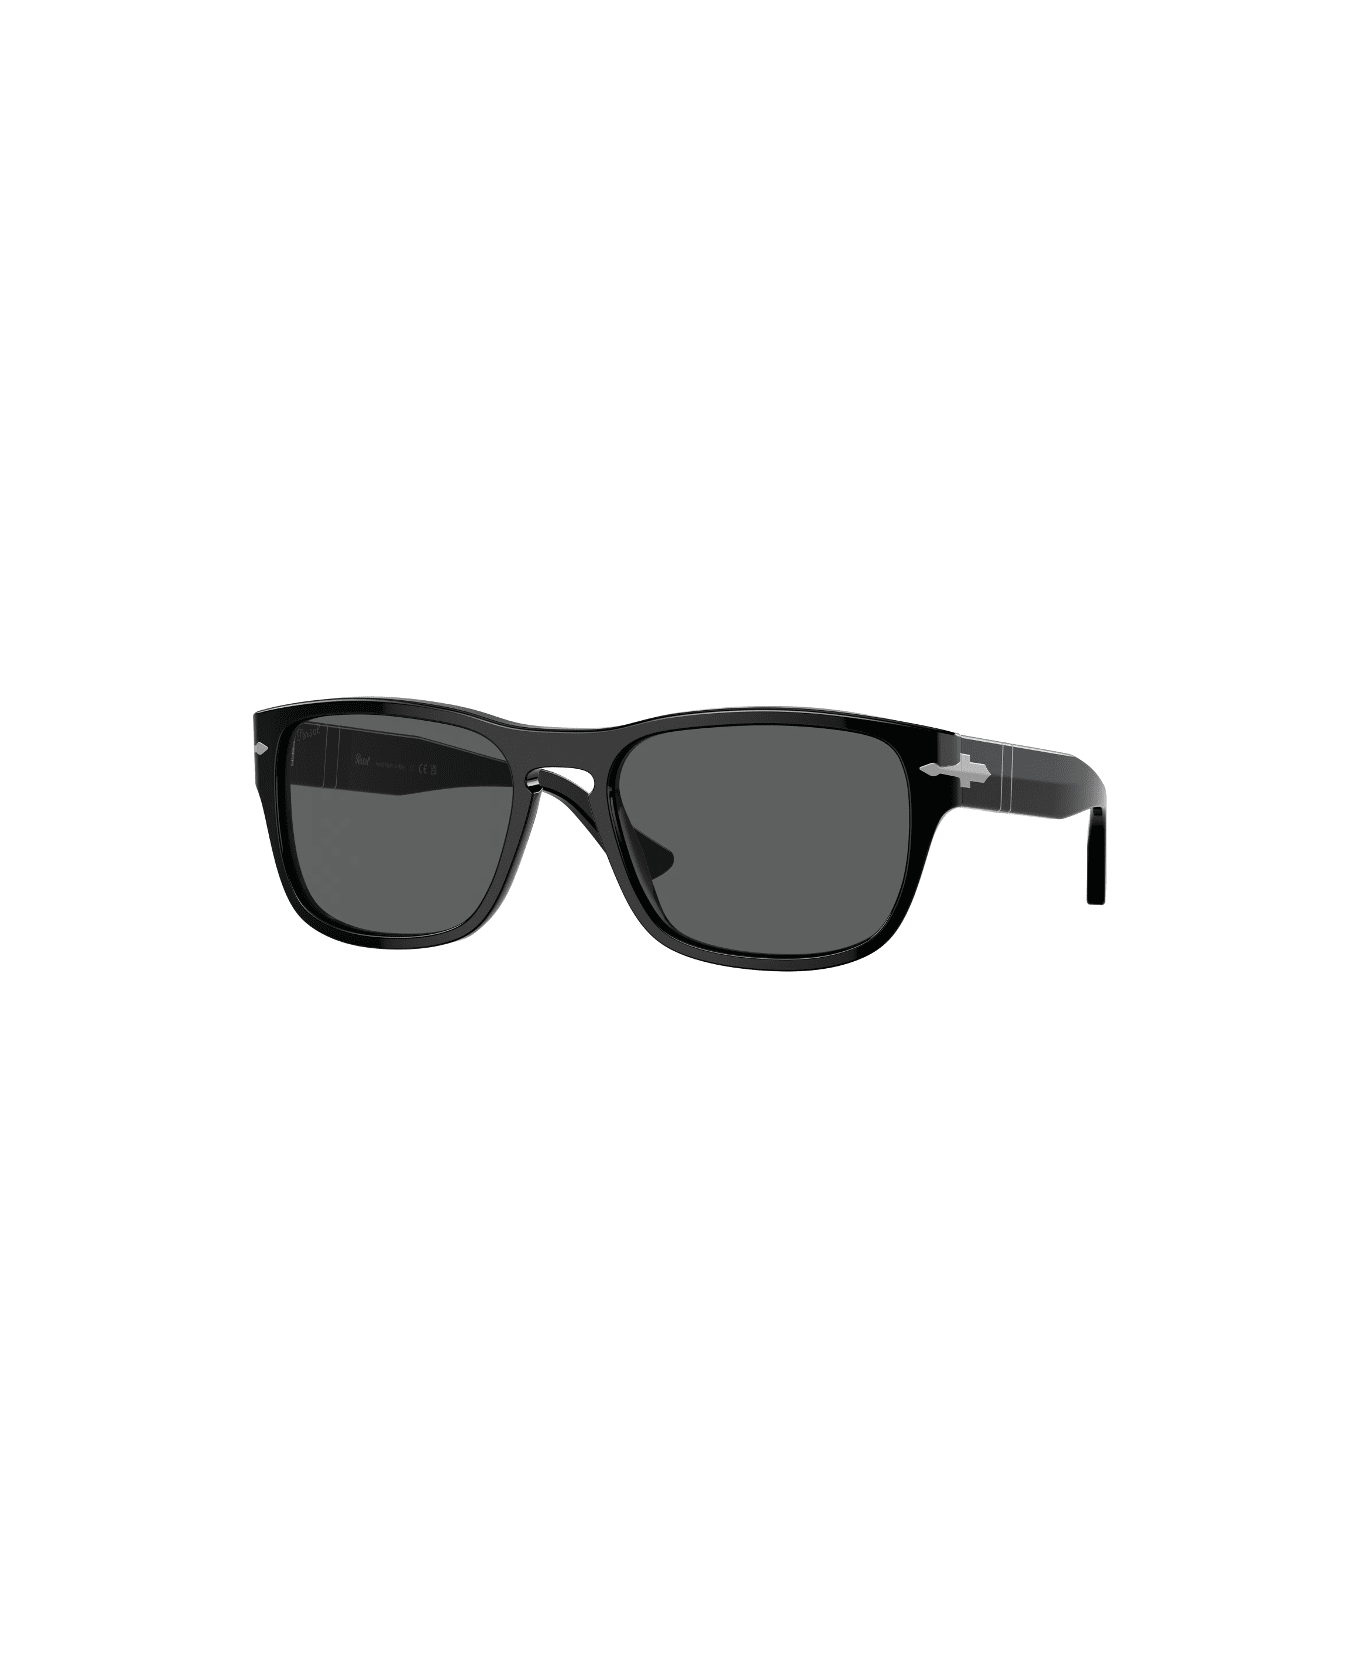 Persol PO3341s 95/31 Sunglasses